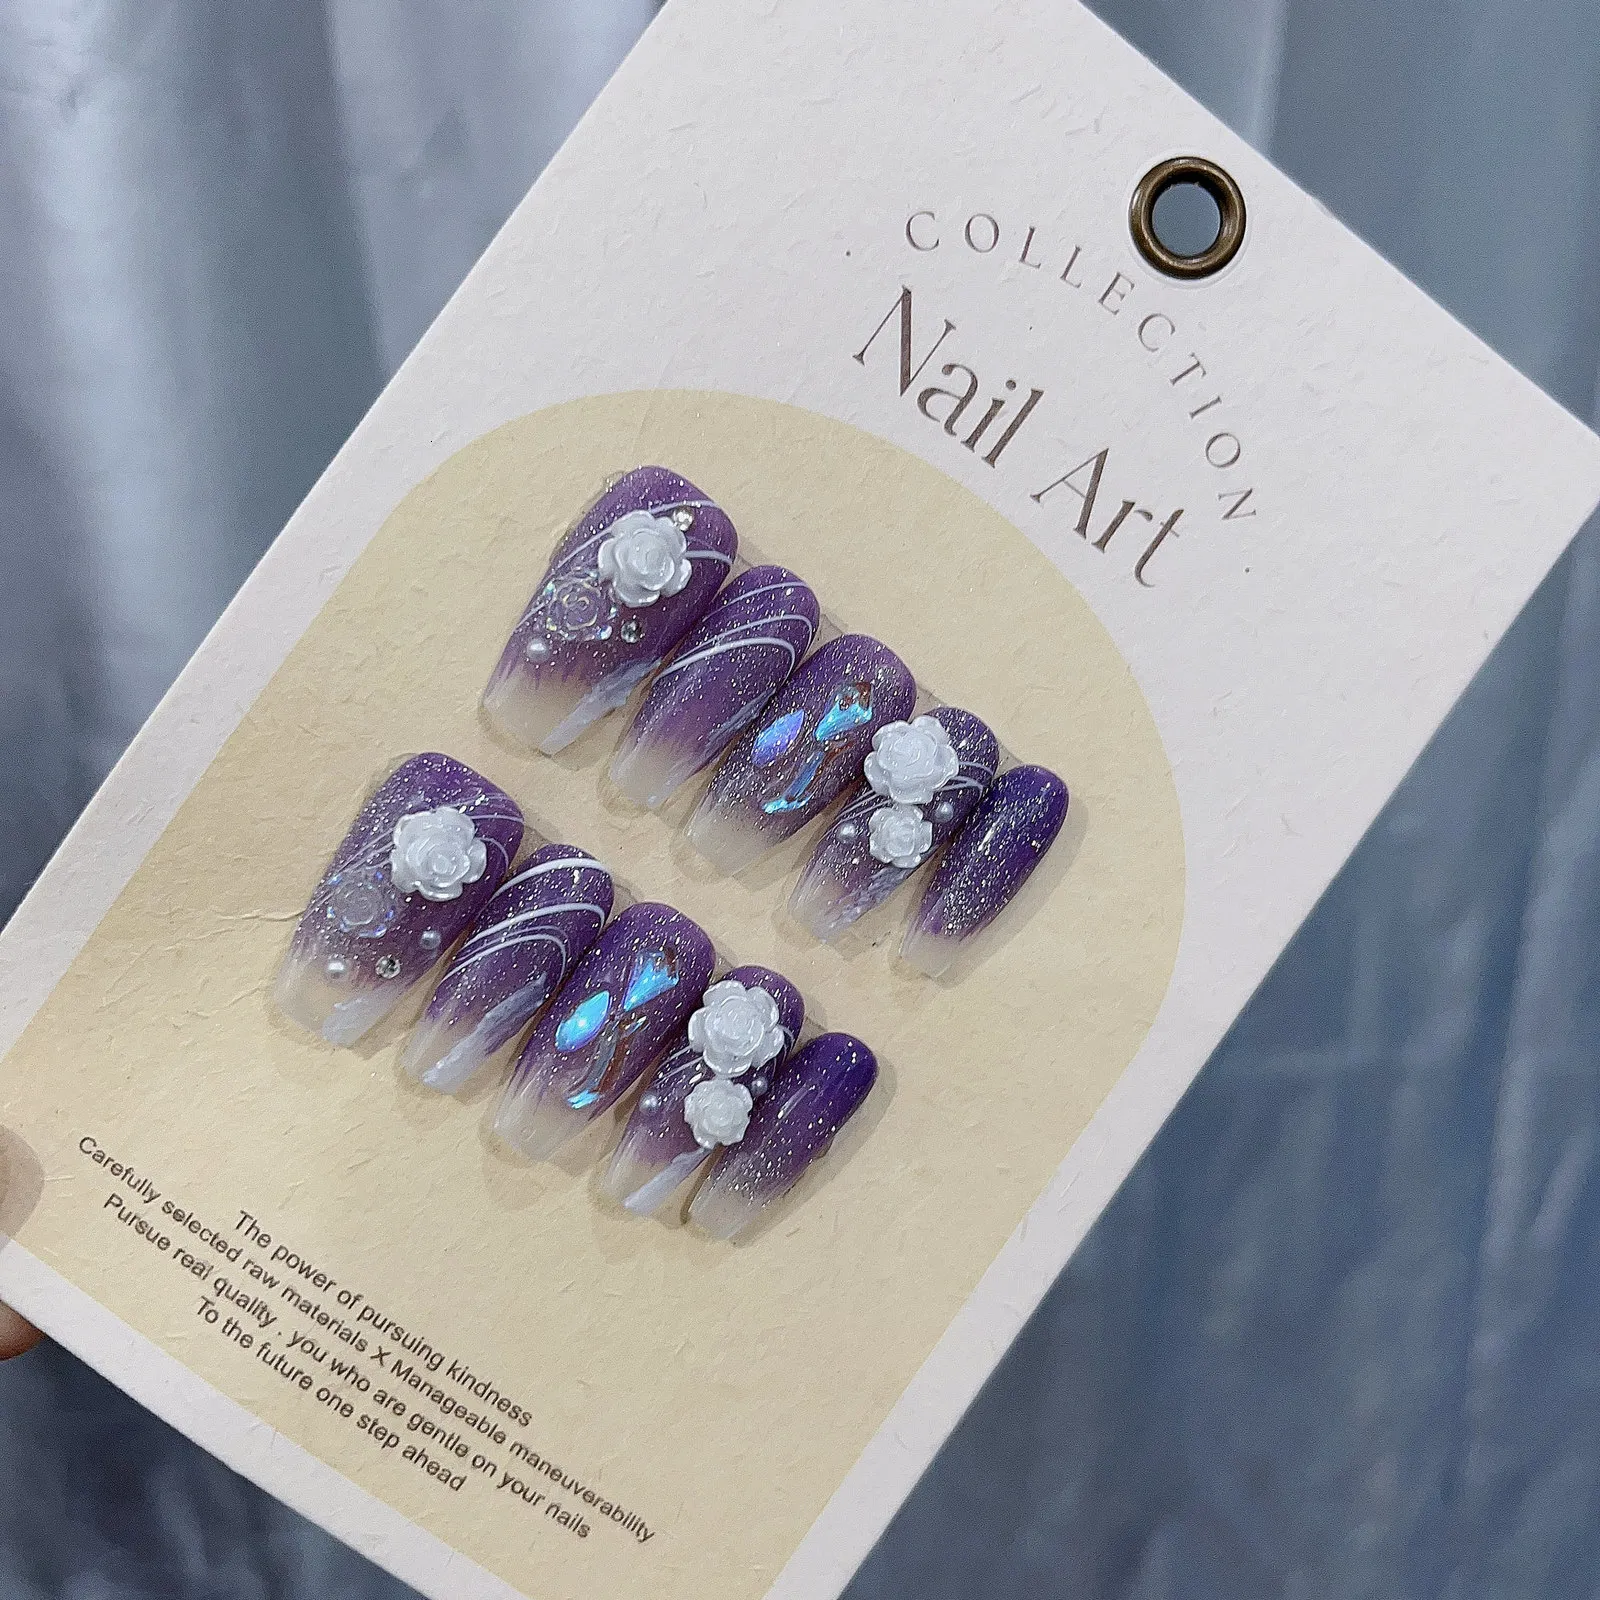 Falska naglar handgjorda lila kamelia hybrid falsk romantisk press på naglar - härlig och drömmande konst i Emmabeauty butik nr .em1957 230715